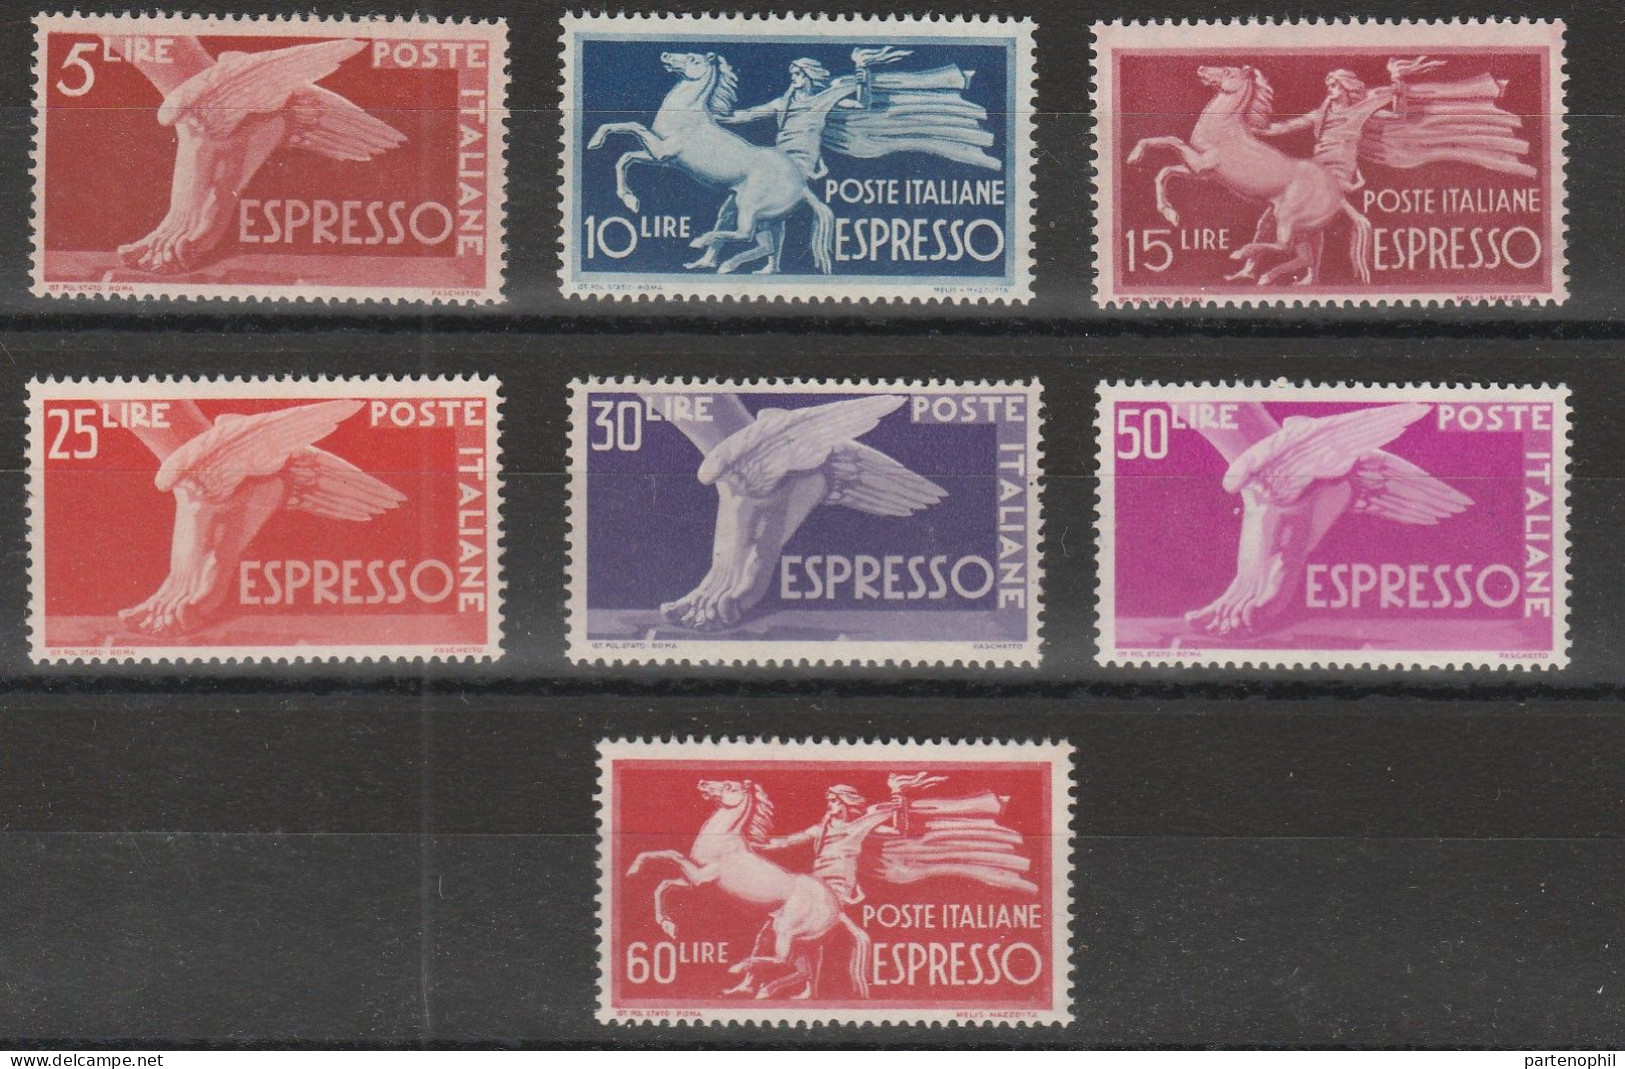 199 Italia - Espressi  Offri Ora! 1945-52 - Democratica N. 28/31. Cat. € 200,00. SPL. MNH - Express/pneumatic Mail